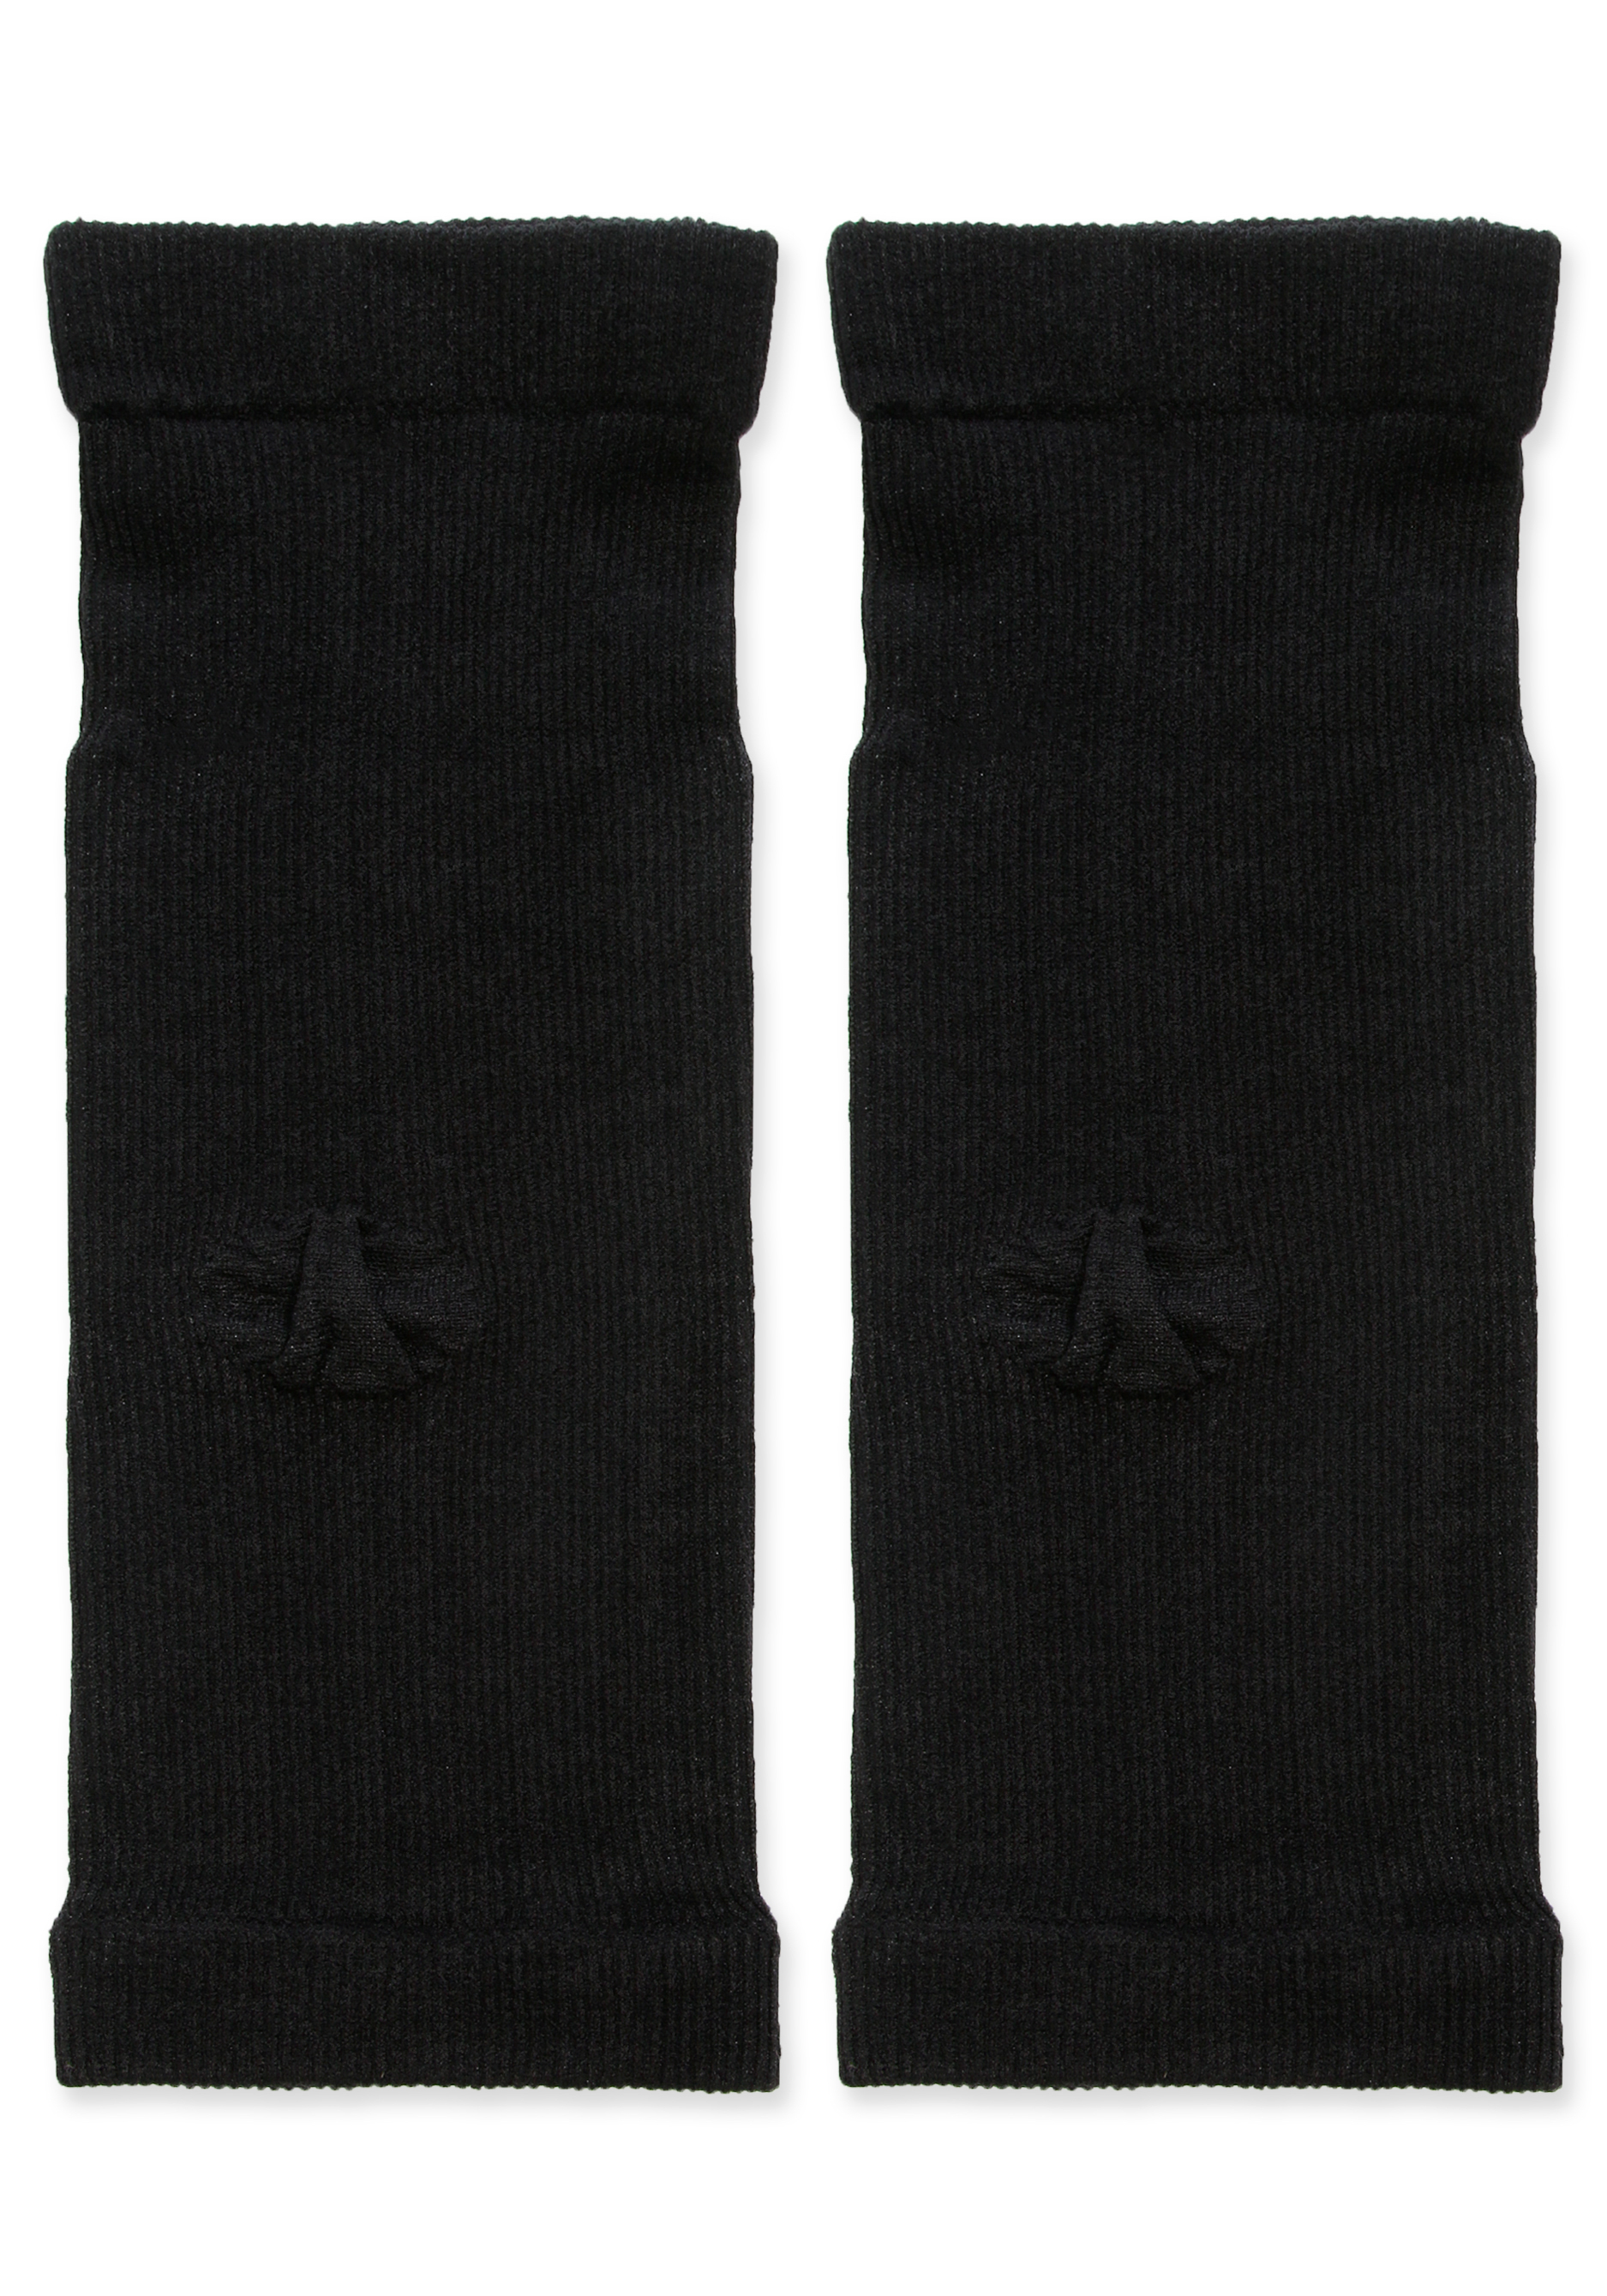 Бандаж локтевого сустава, 2 шт, цвет черный, размер 3